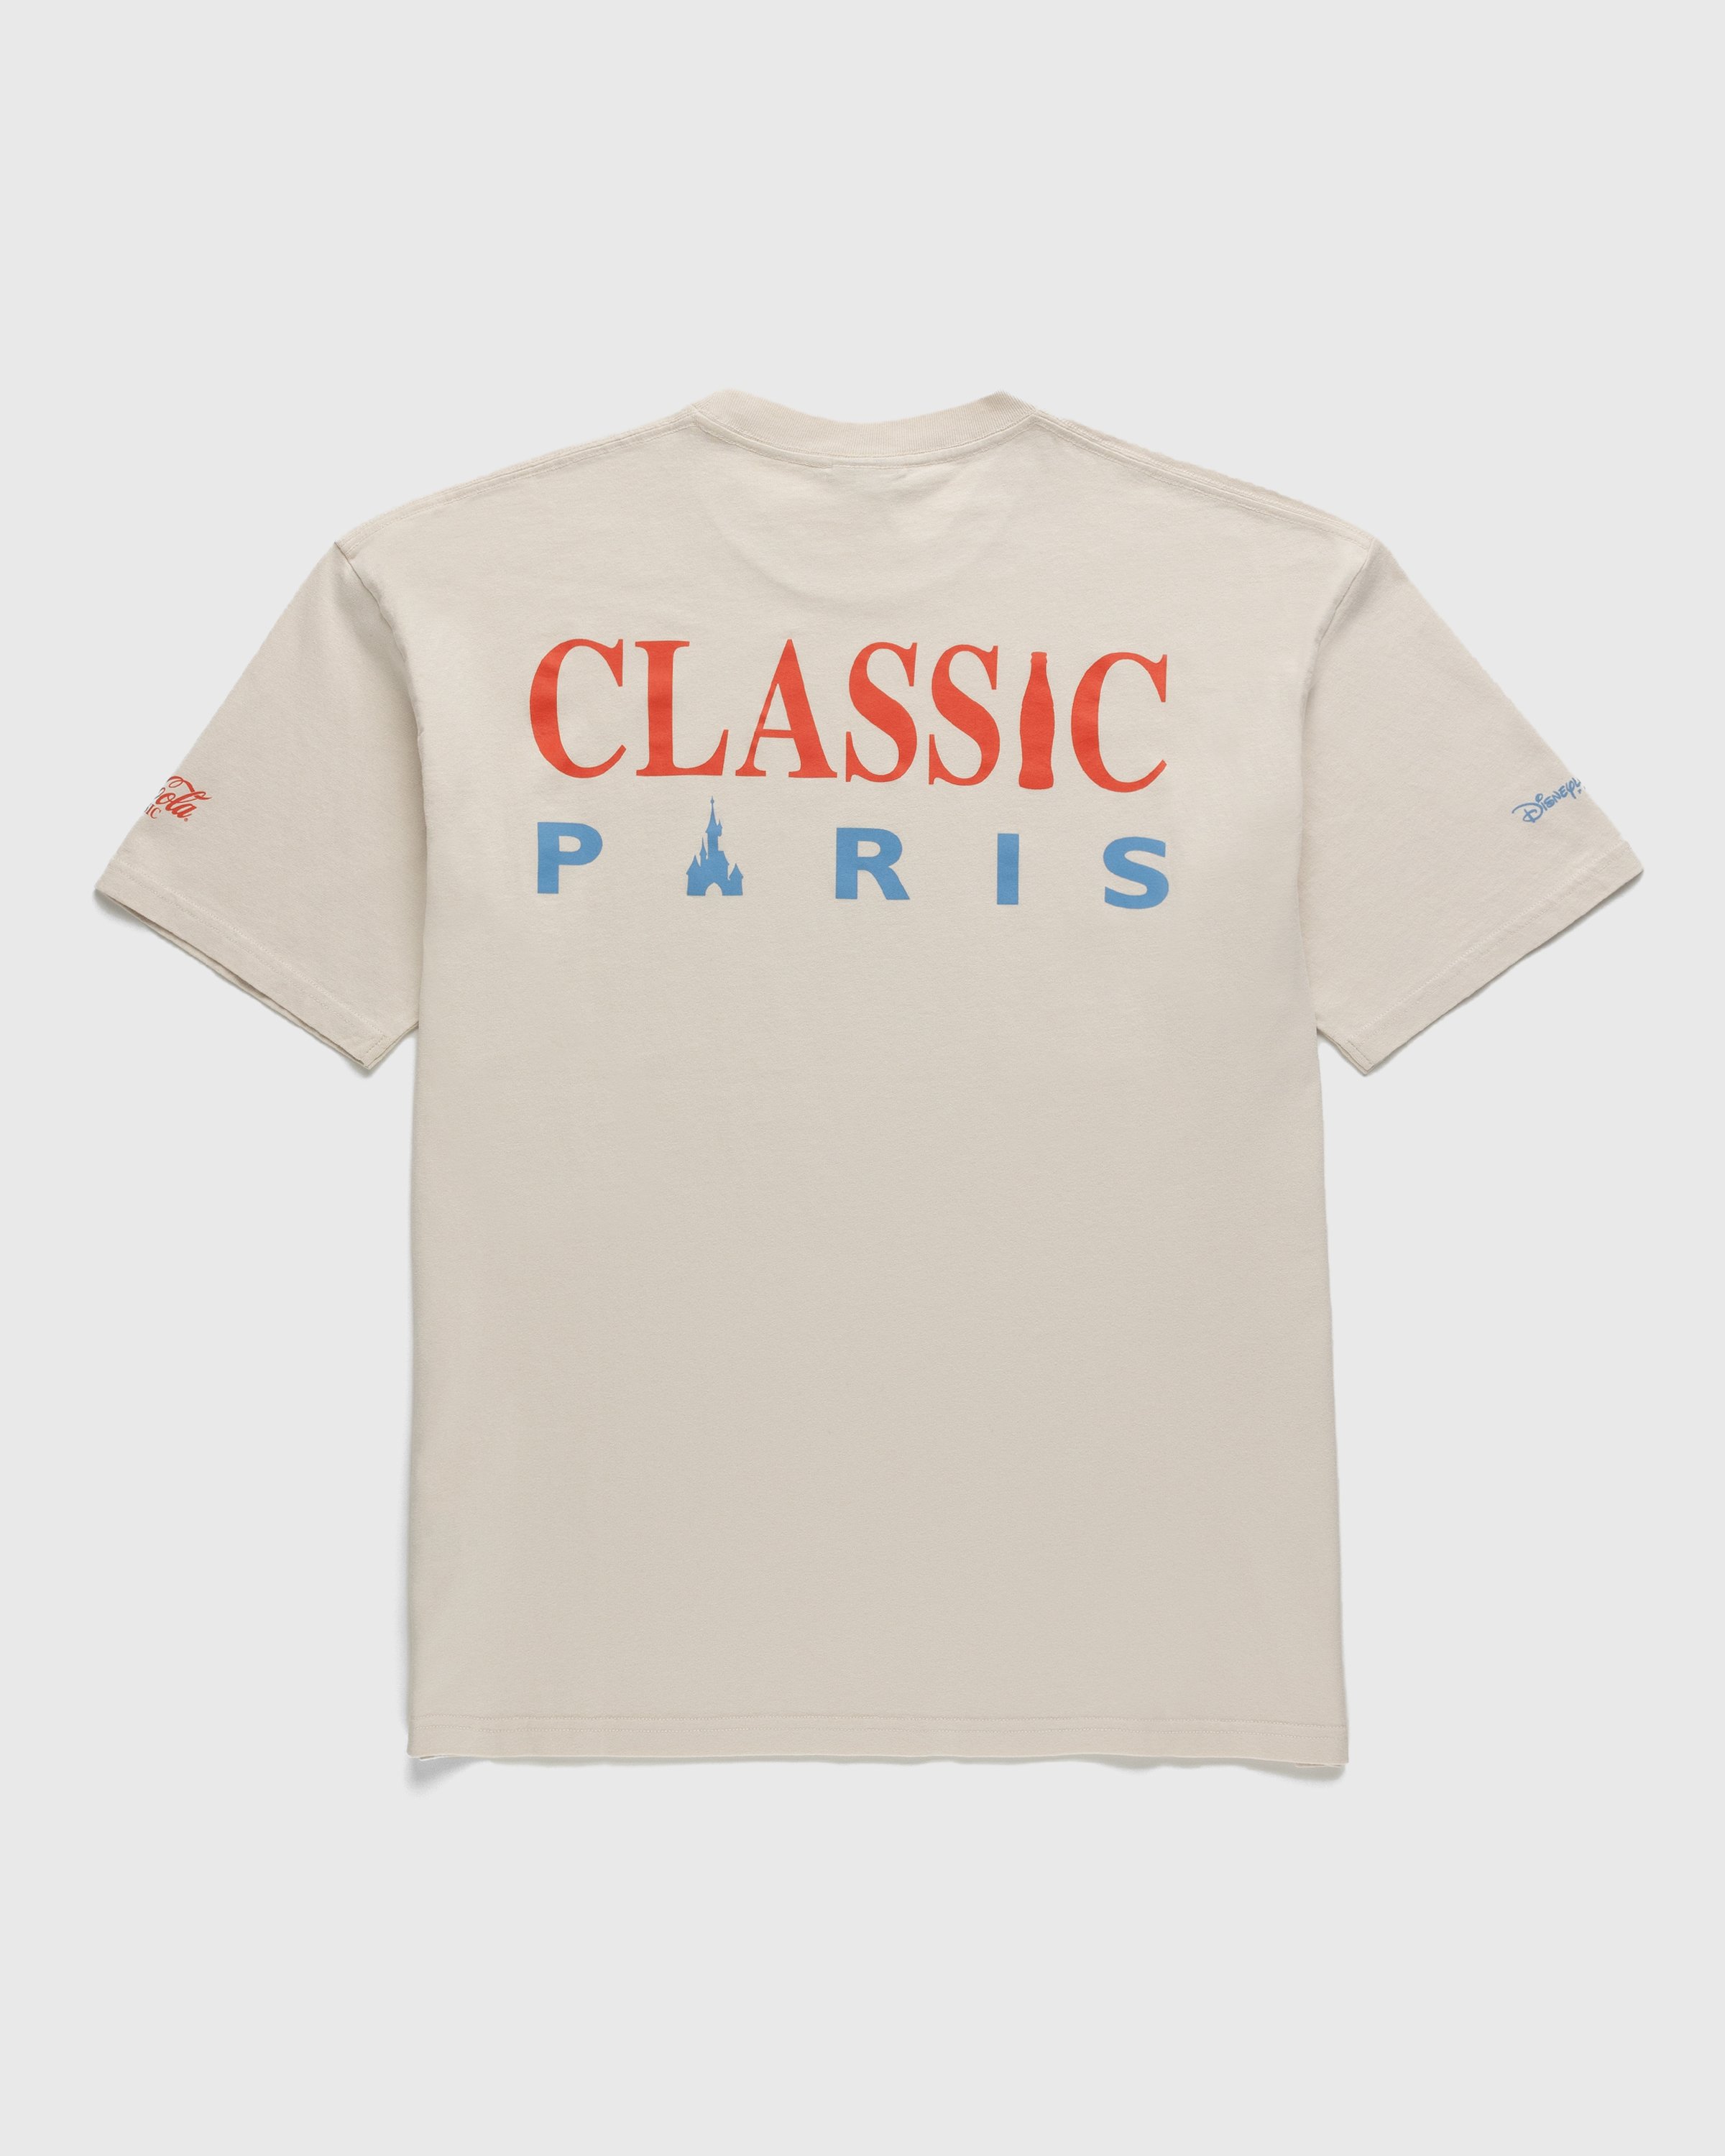 Coca-Cola x Disneyland Paris - Not In Paris 4 Classic Paris T-Shirt Natural - Clothing - Beige - Image 1